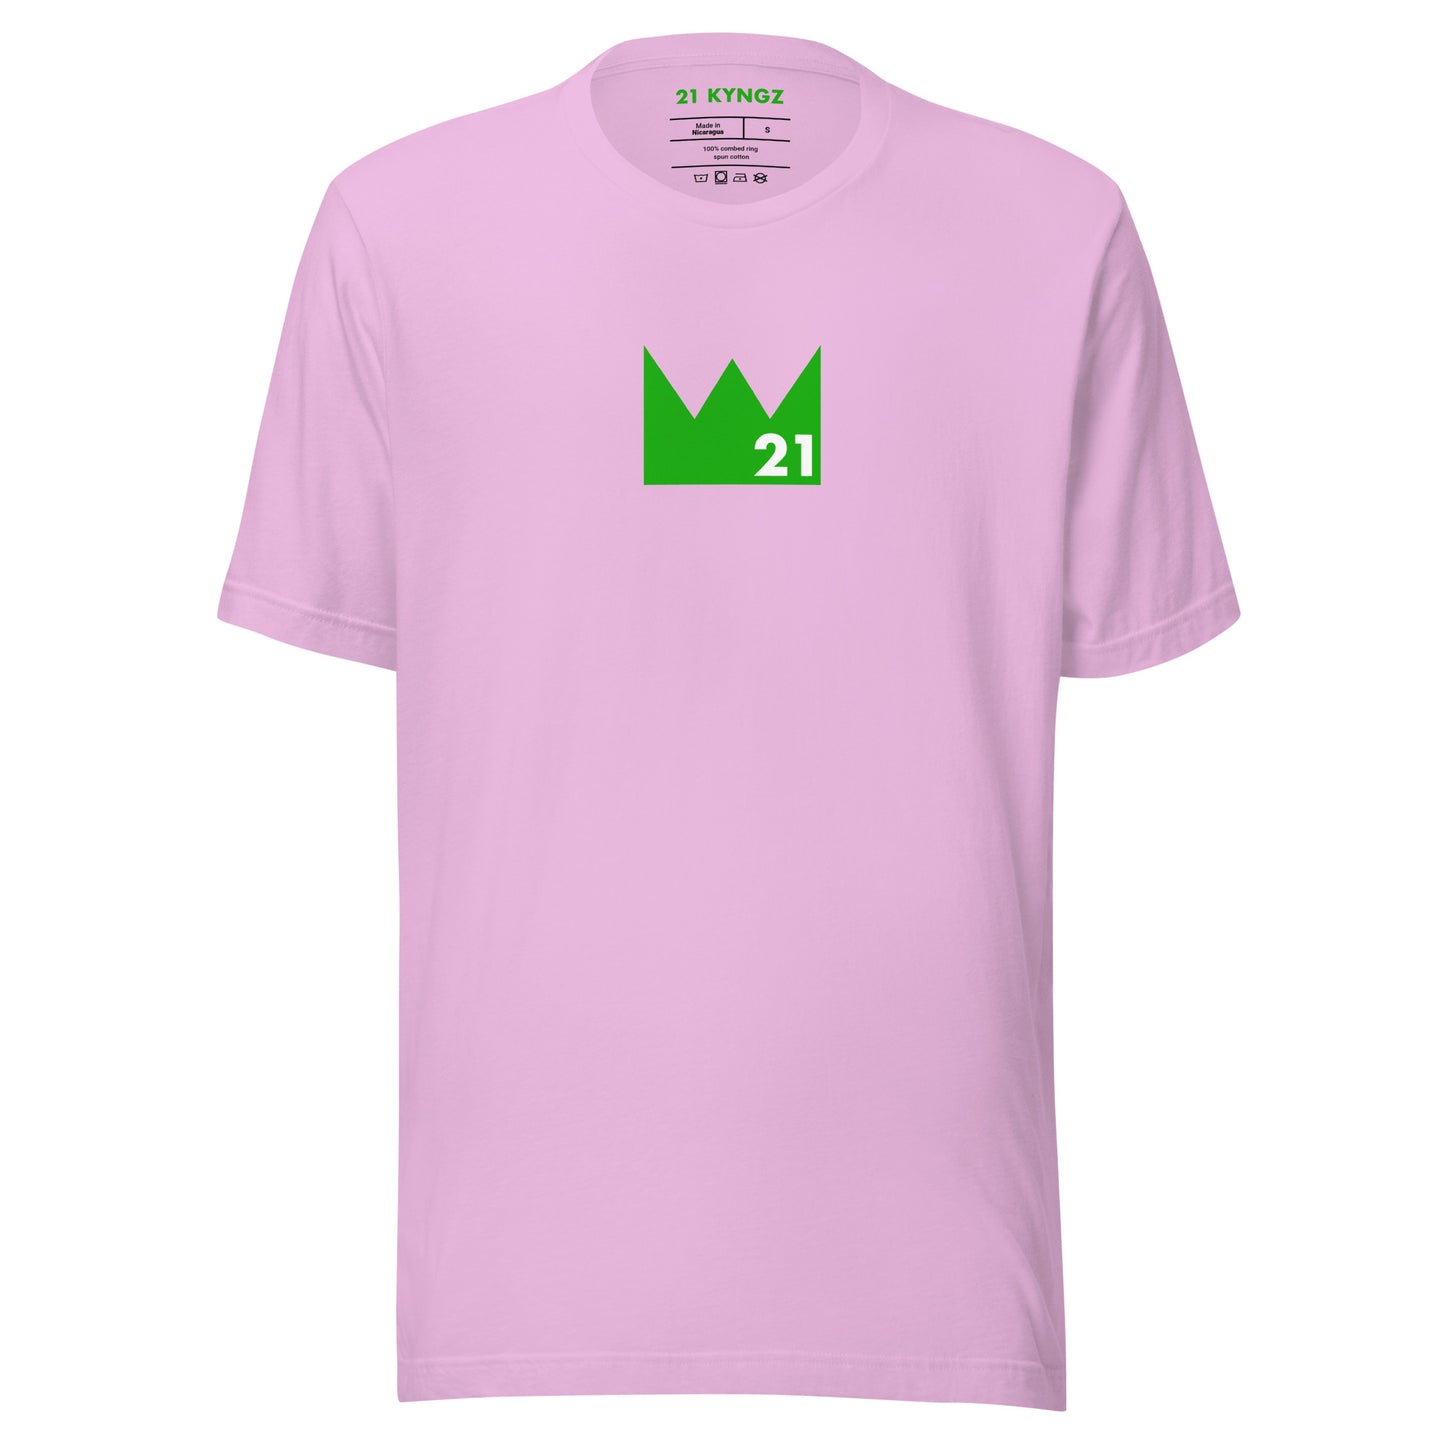 Crown 21 (Gr) T-shirt